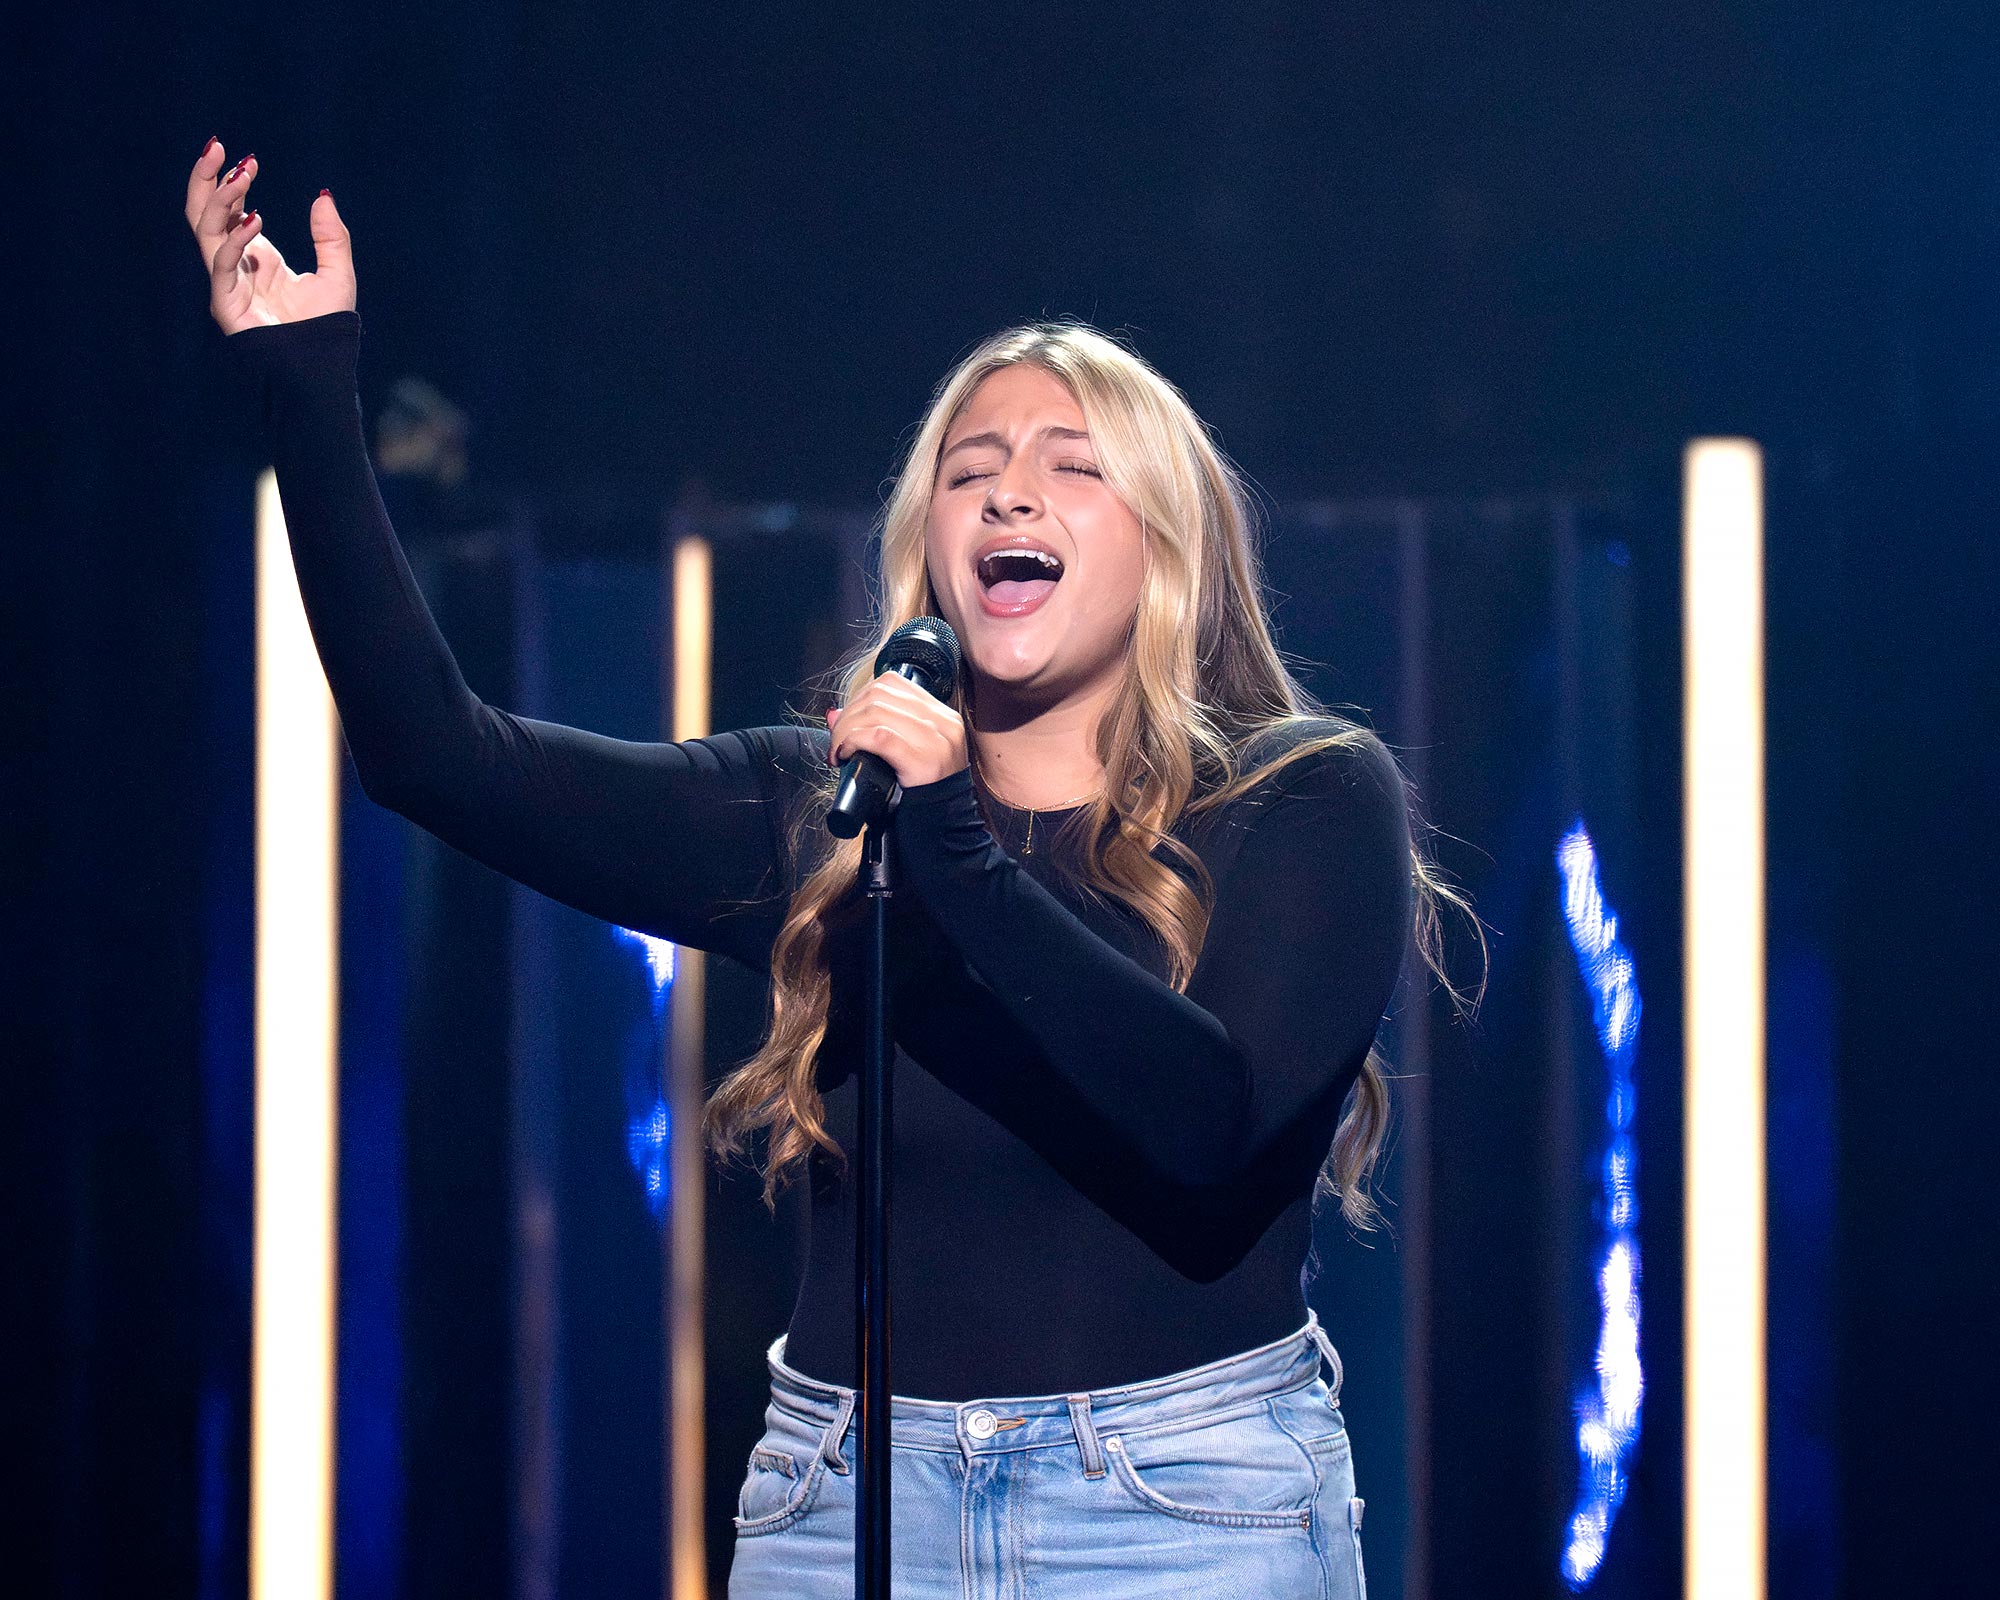 Juan Pablos Daughter Feels Luke Bryan On My Side During American Idol Journey